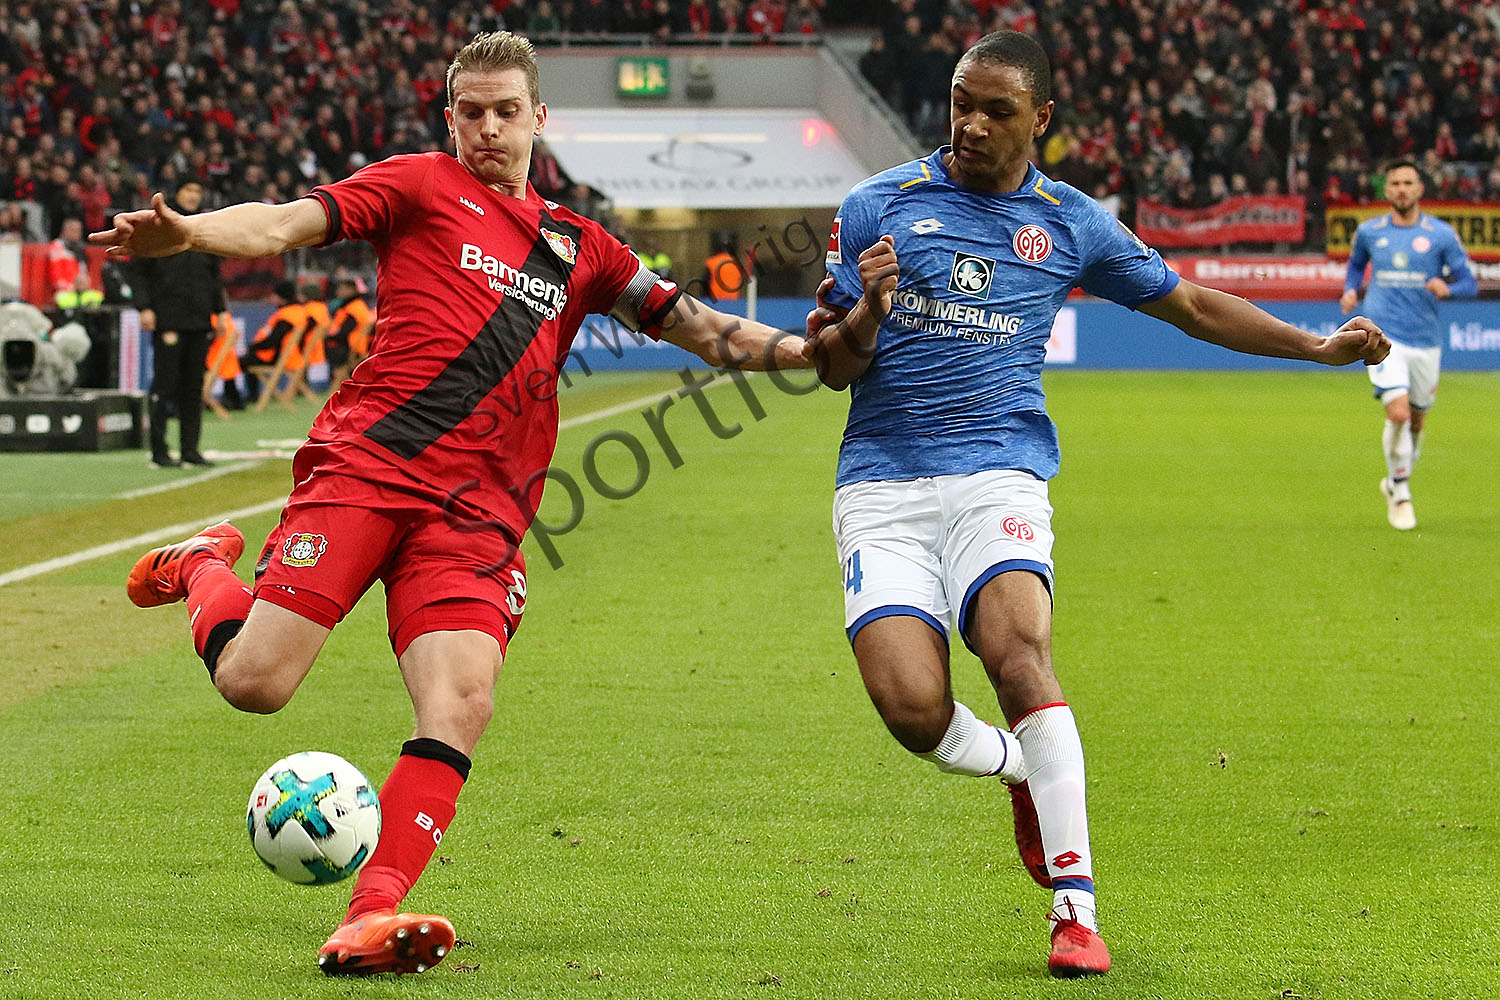 1.BL - 17/18 - Bayer Leverkusen vs. 1. FSV Mainz 05